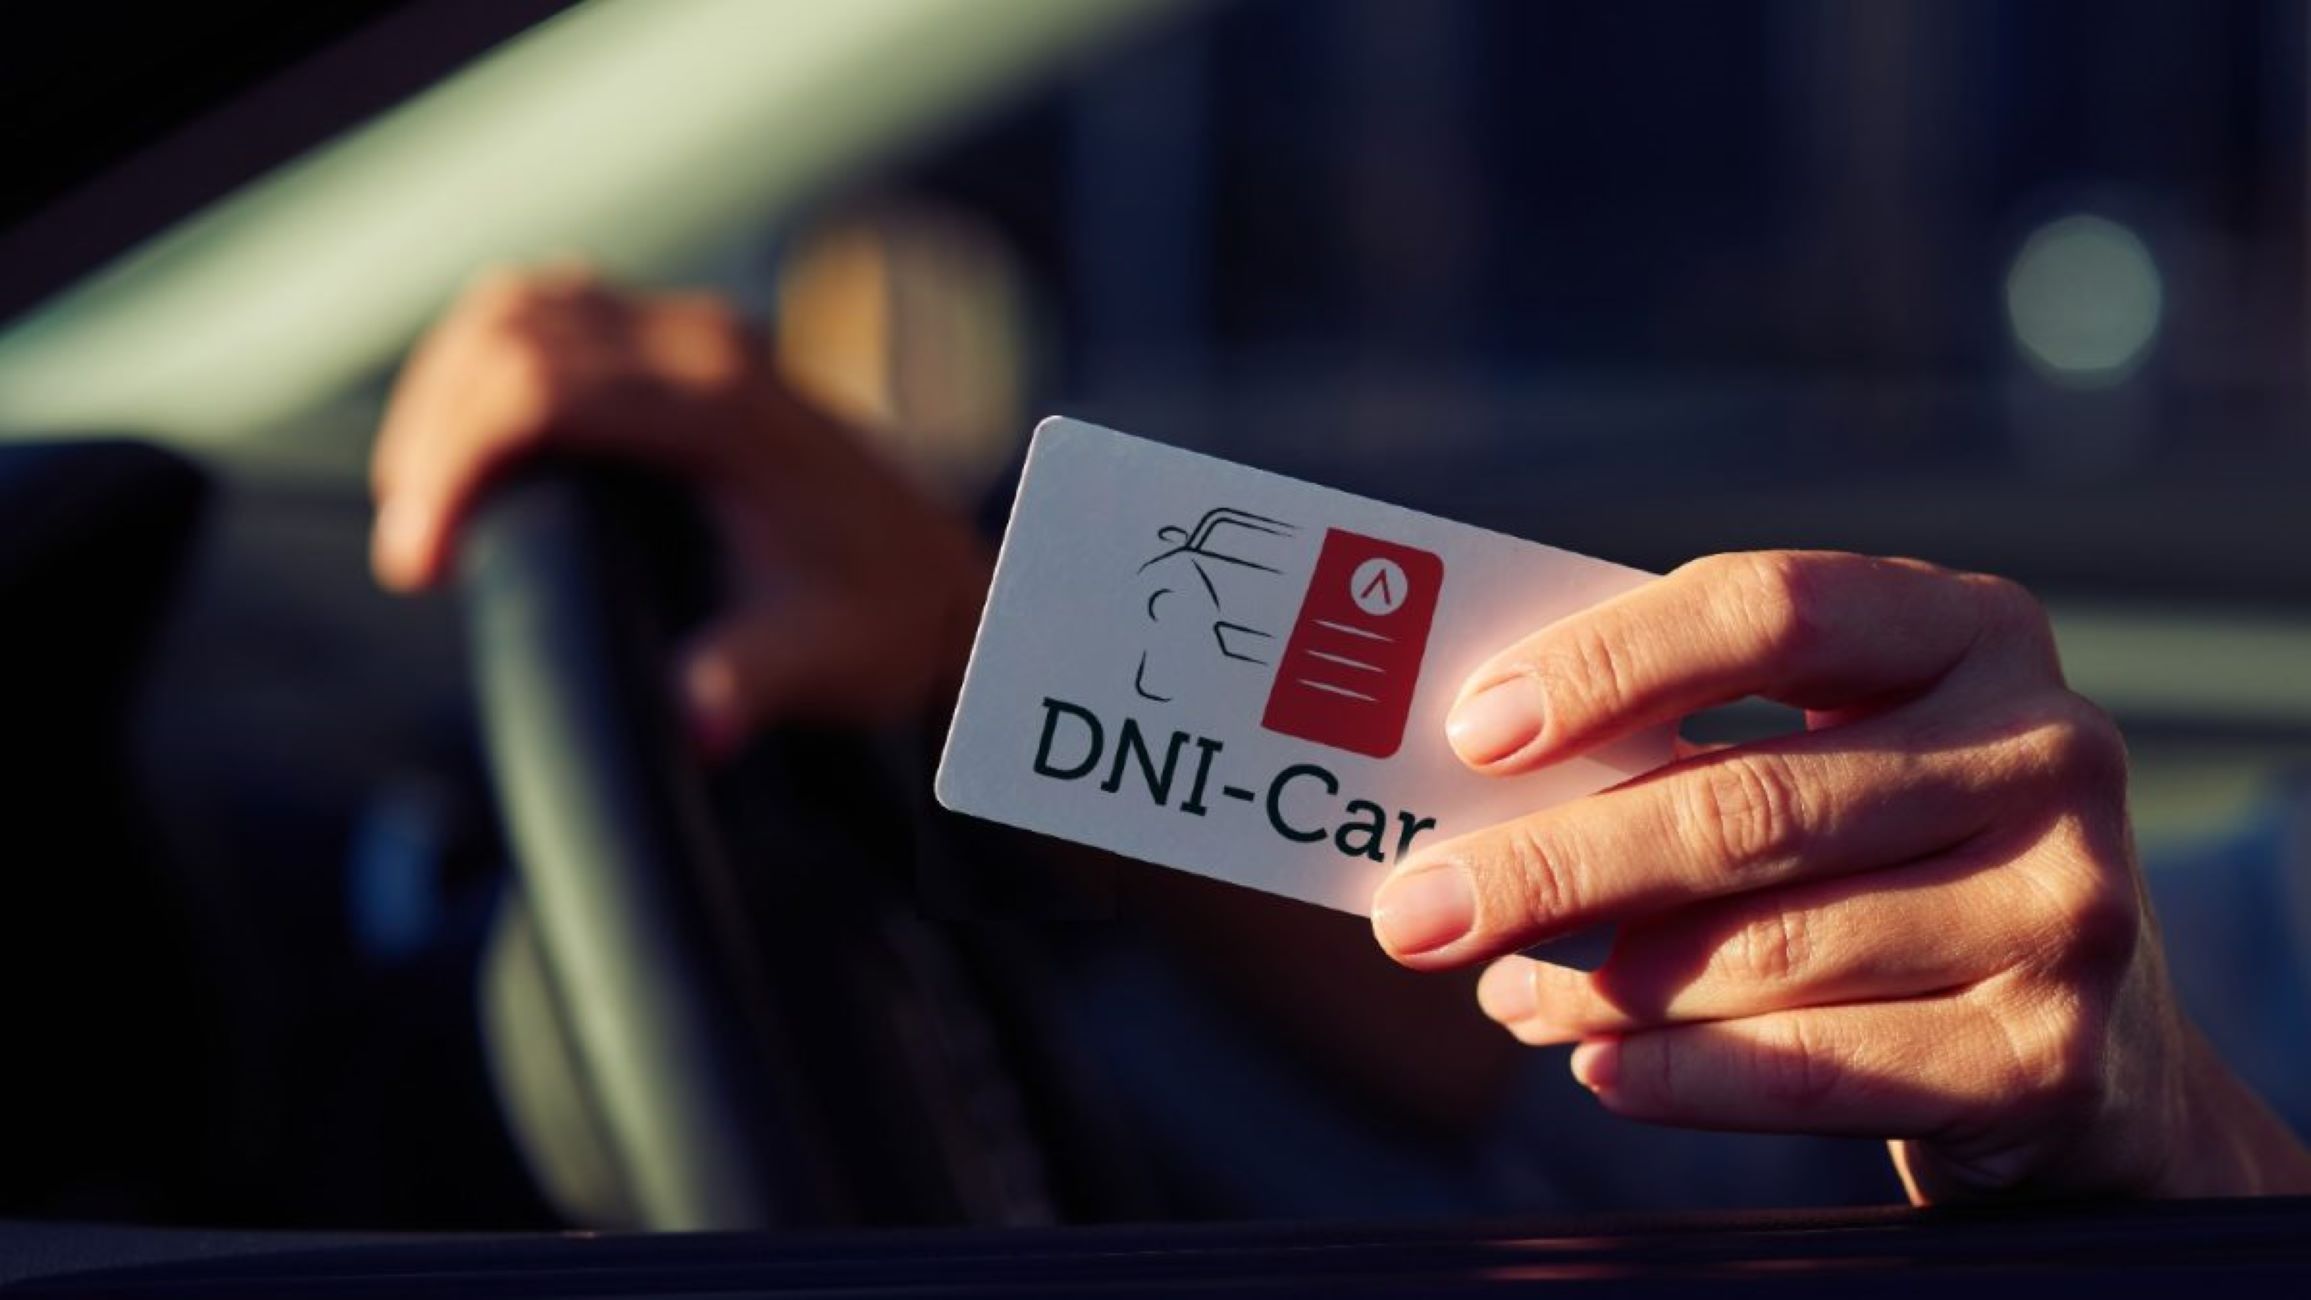 ¿Para qué sirve DNI-Car, el nuevo carnet digital de la DGT?